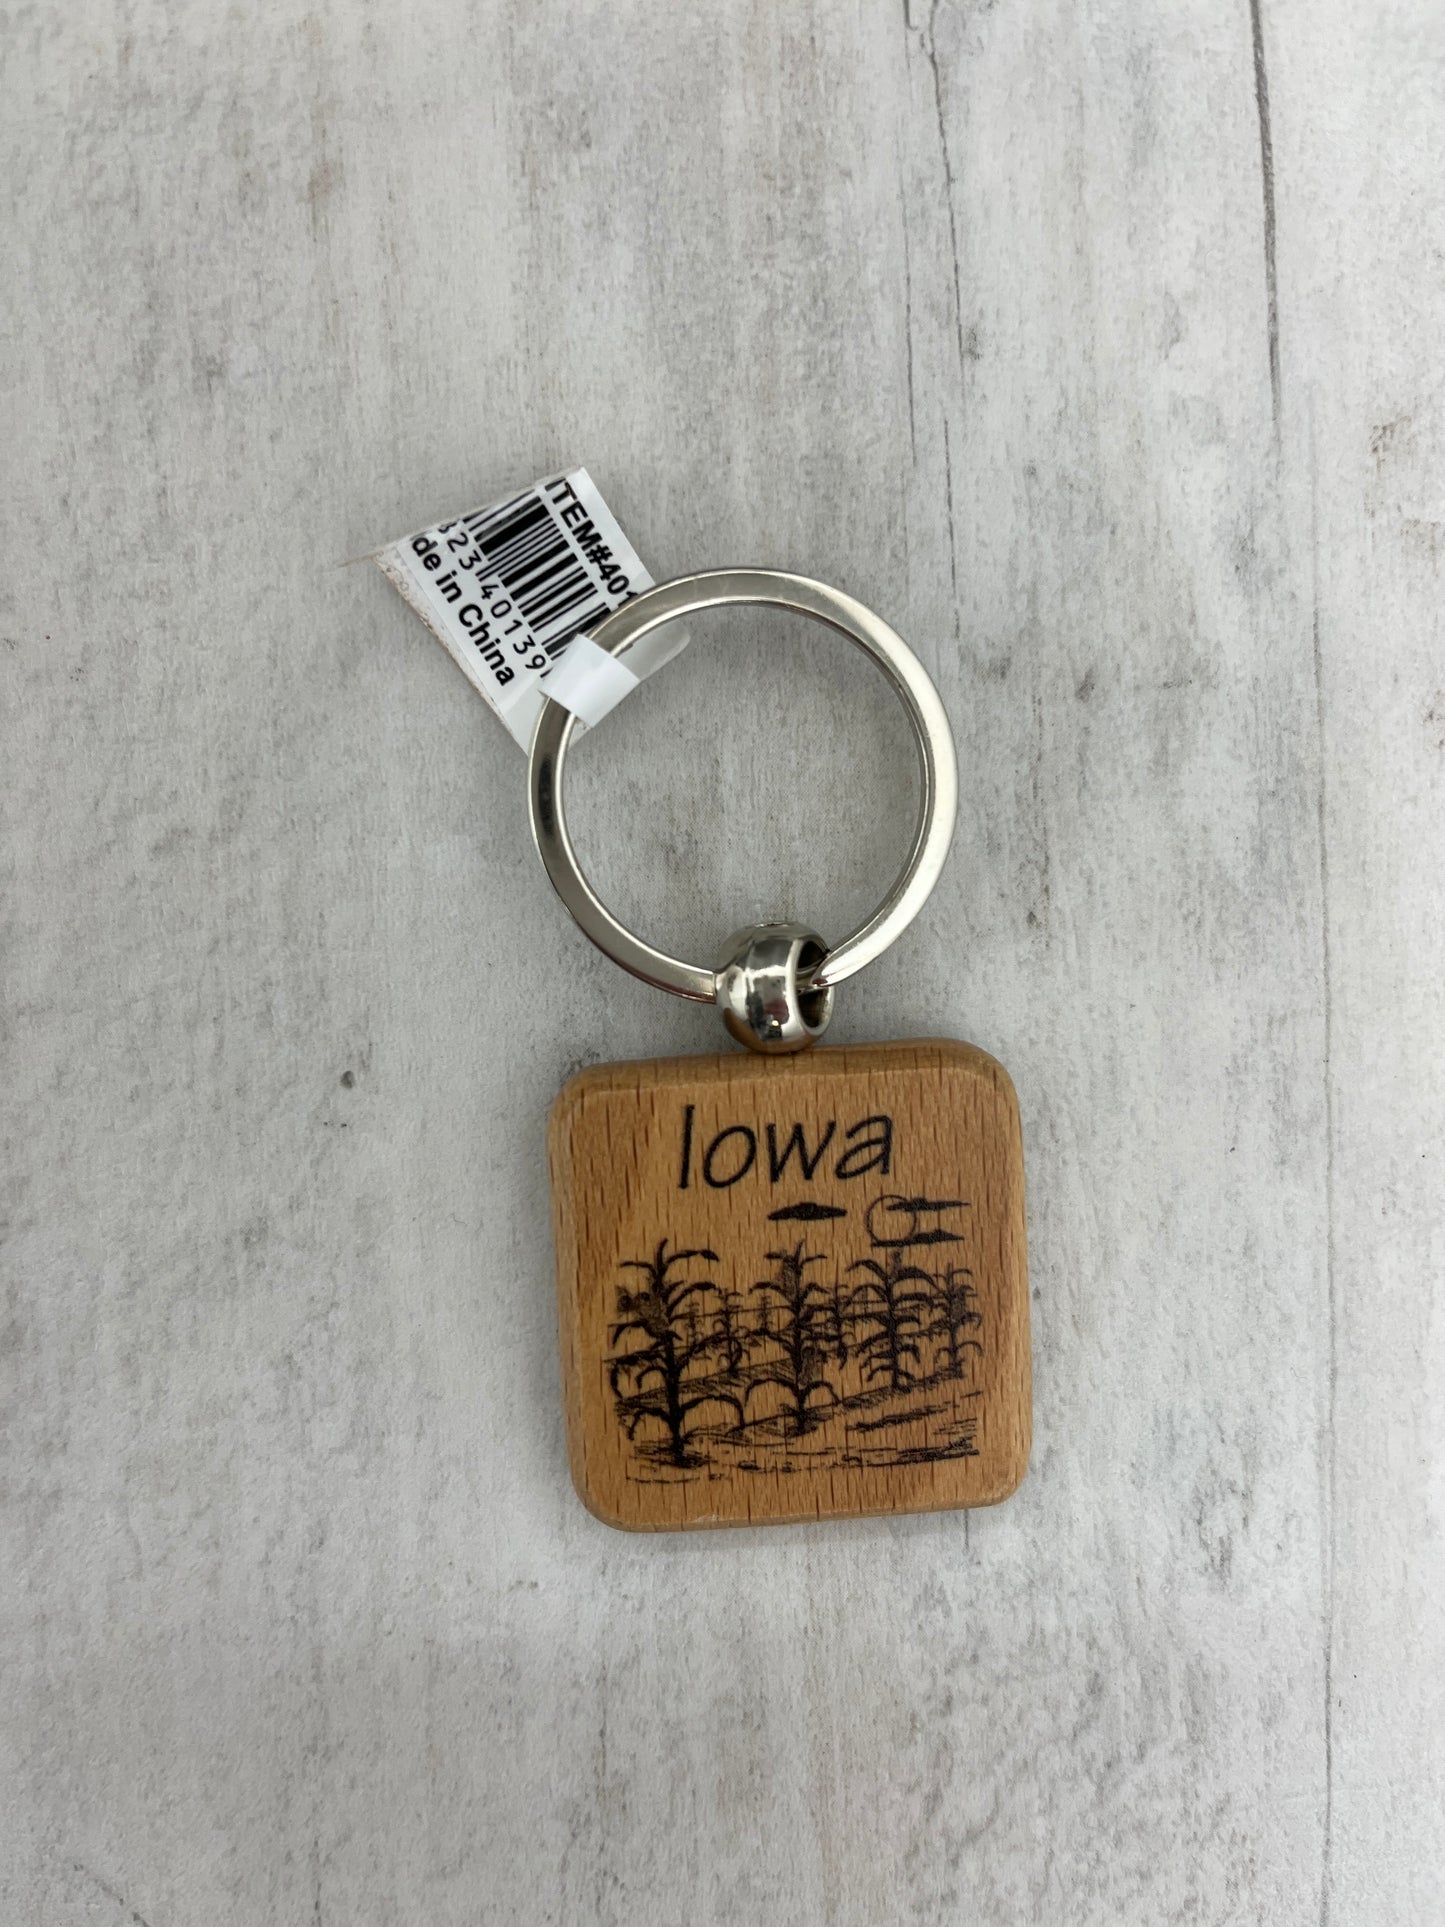 Iowa Square Corn Scene Keychain